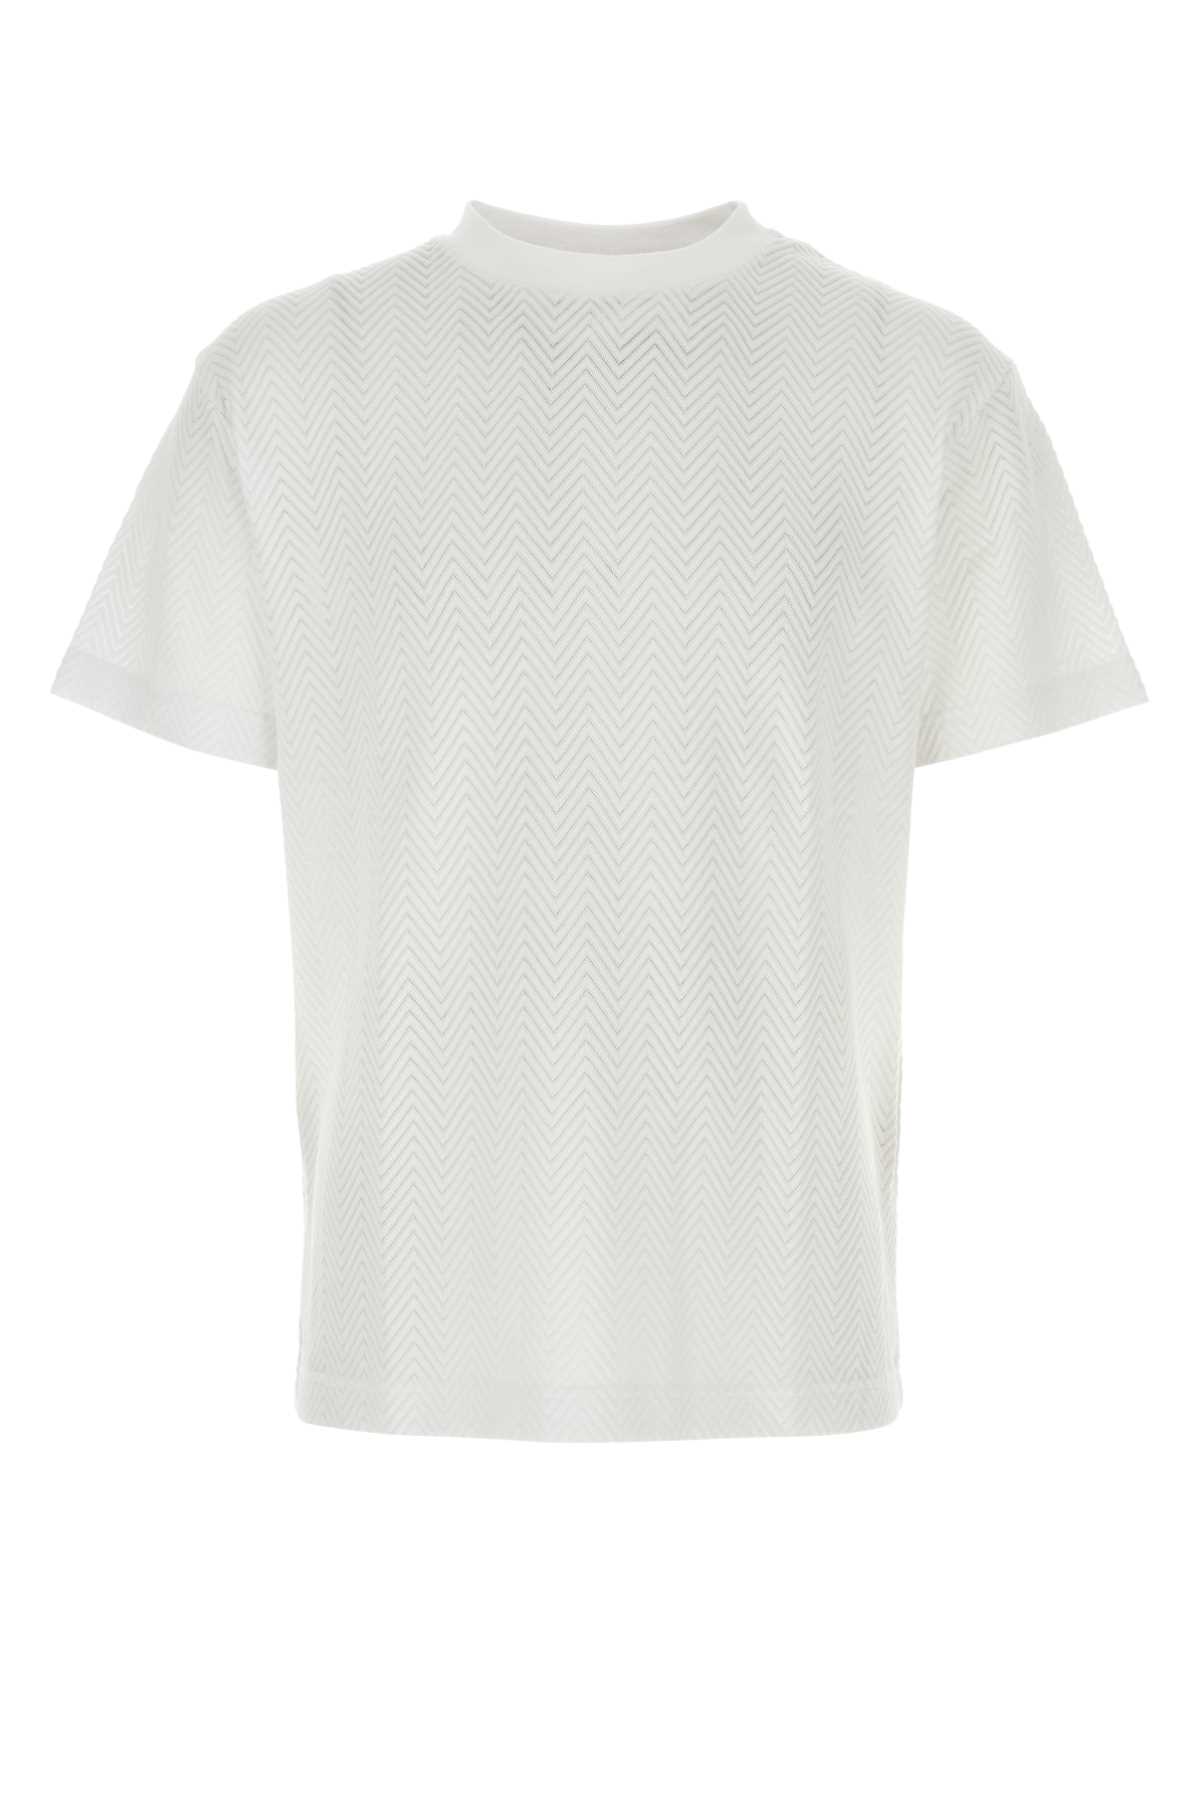 Missoni White Cotton Blend T-shirt